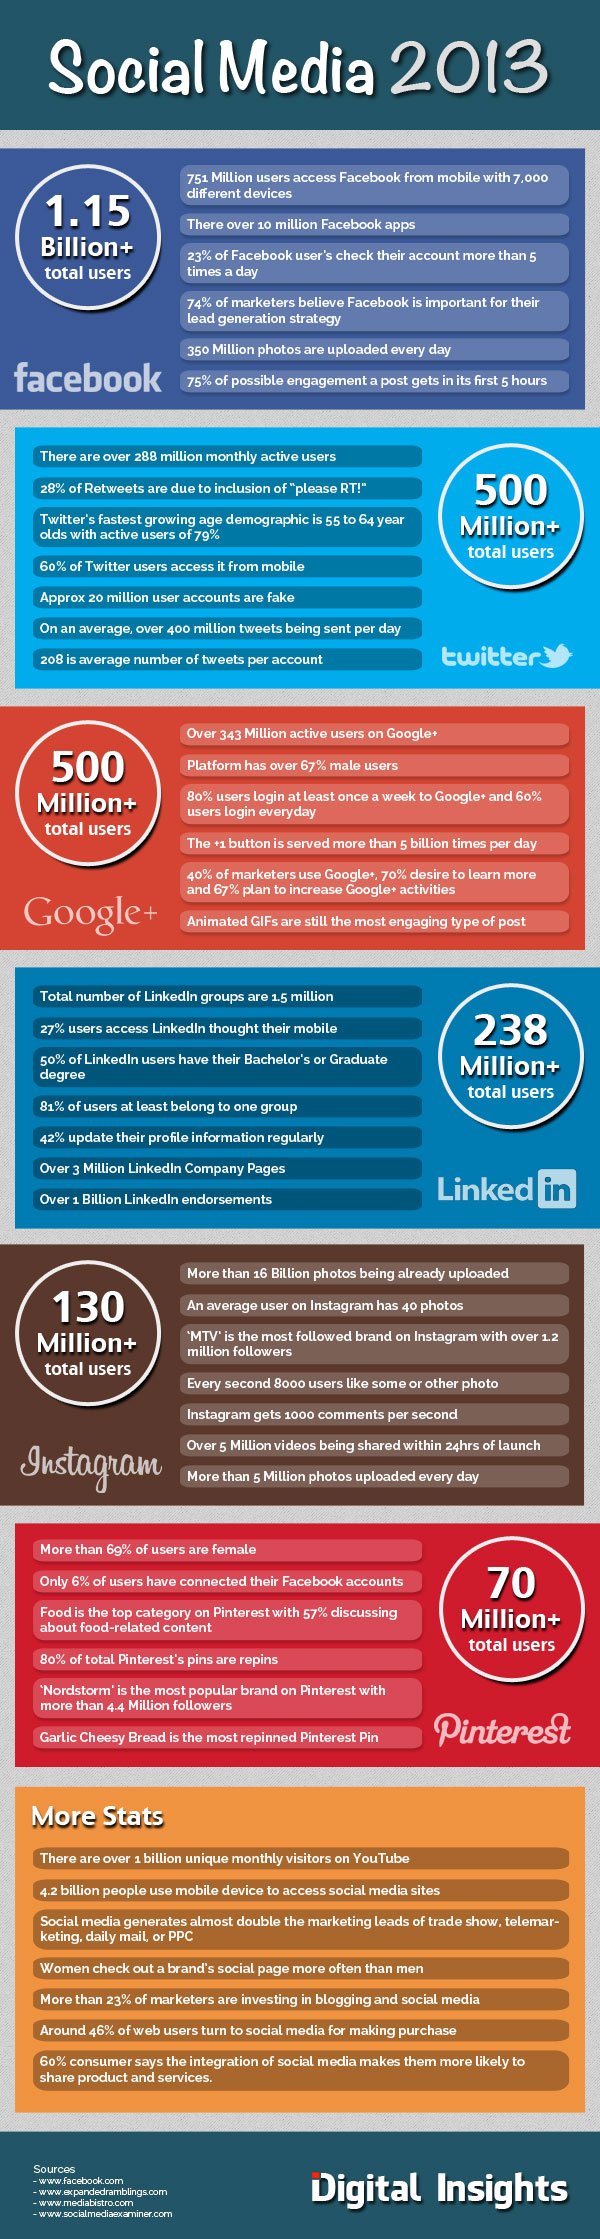 digital-insights-social-media-2013